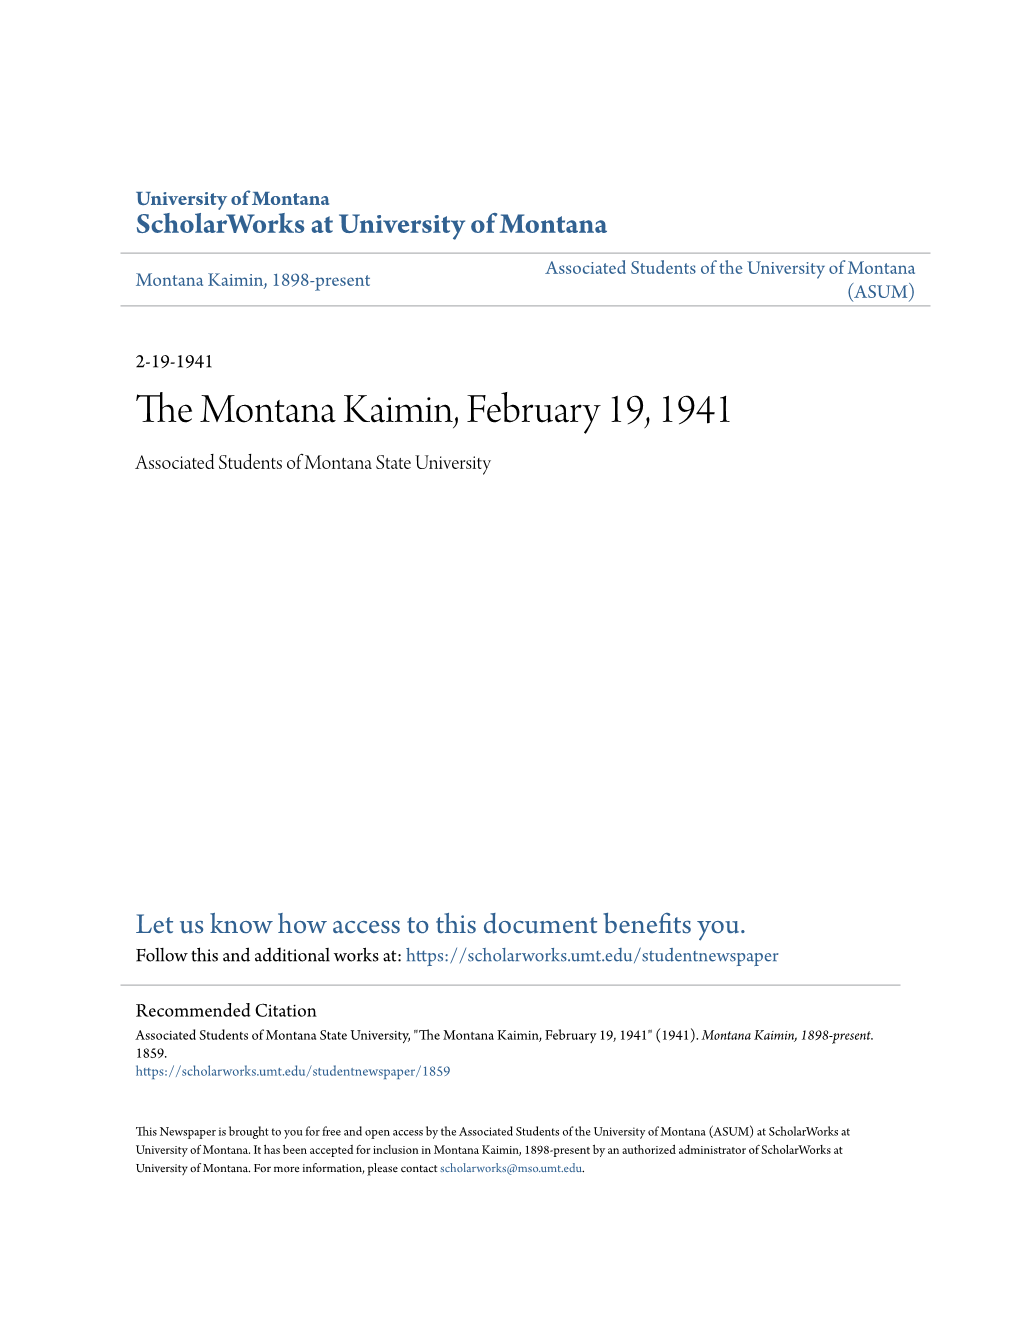 The Montana Kaimin, February 19, 1941